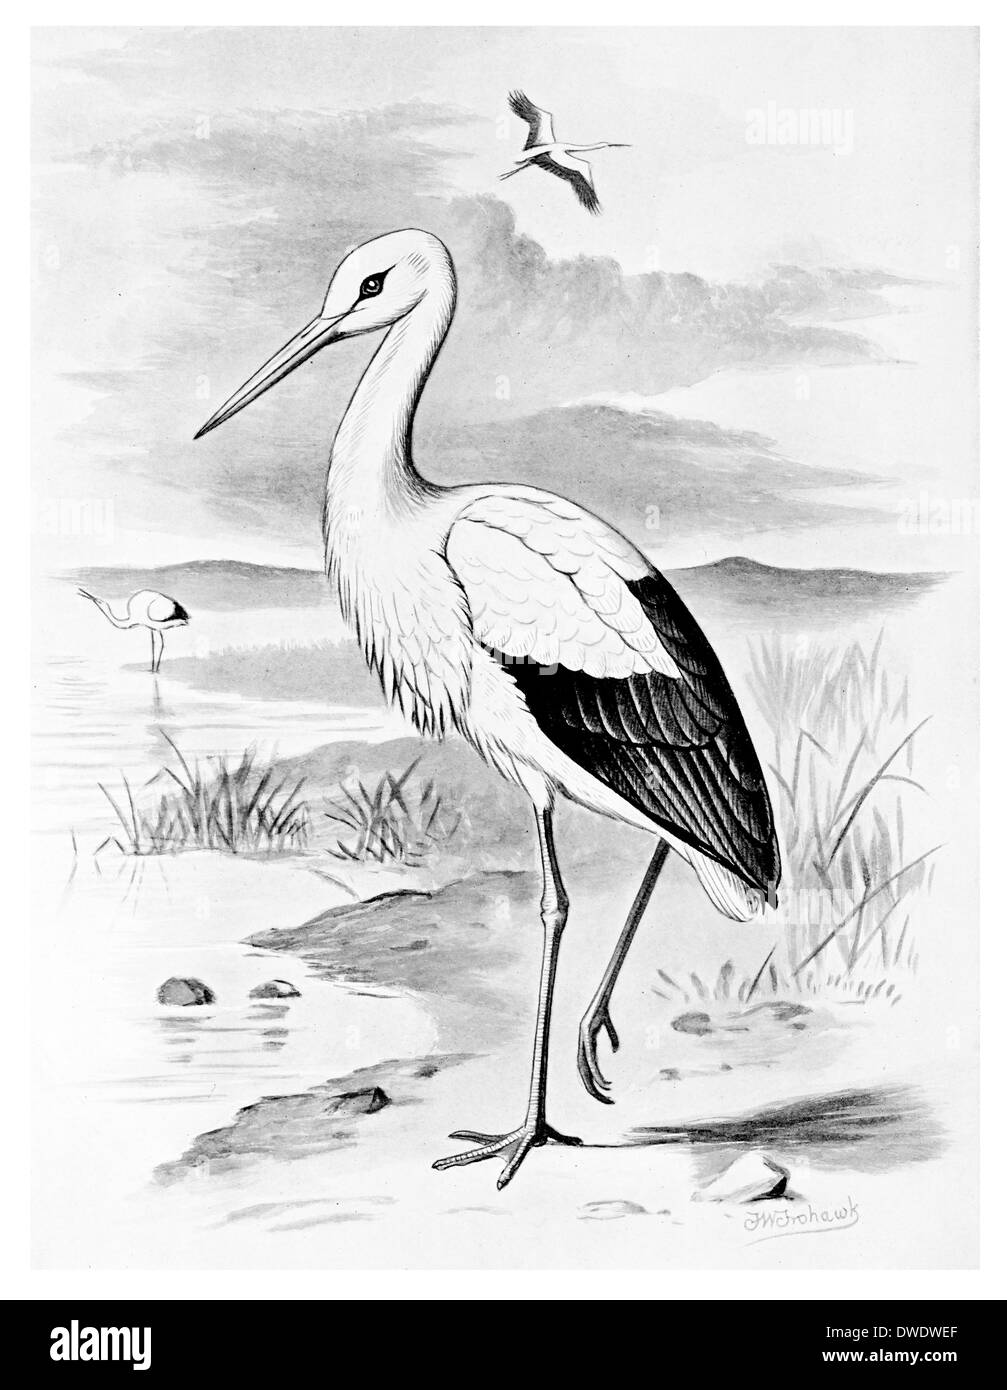 Stork Sketch Vector Illustration. Hand Sketching a Stork for a Design. Stork,  Vector Sketch Illustration Stock Illustration - Illustration of bird,  plumage: 184873431